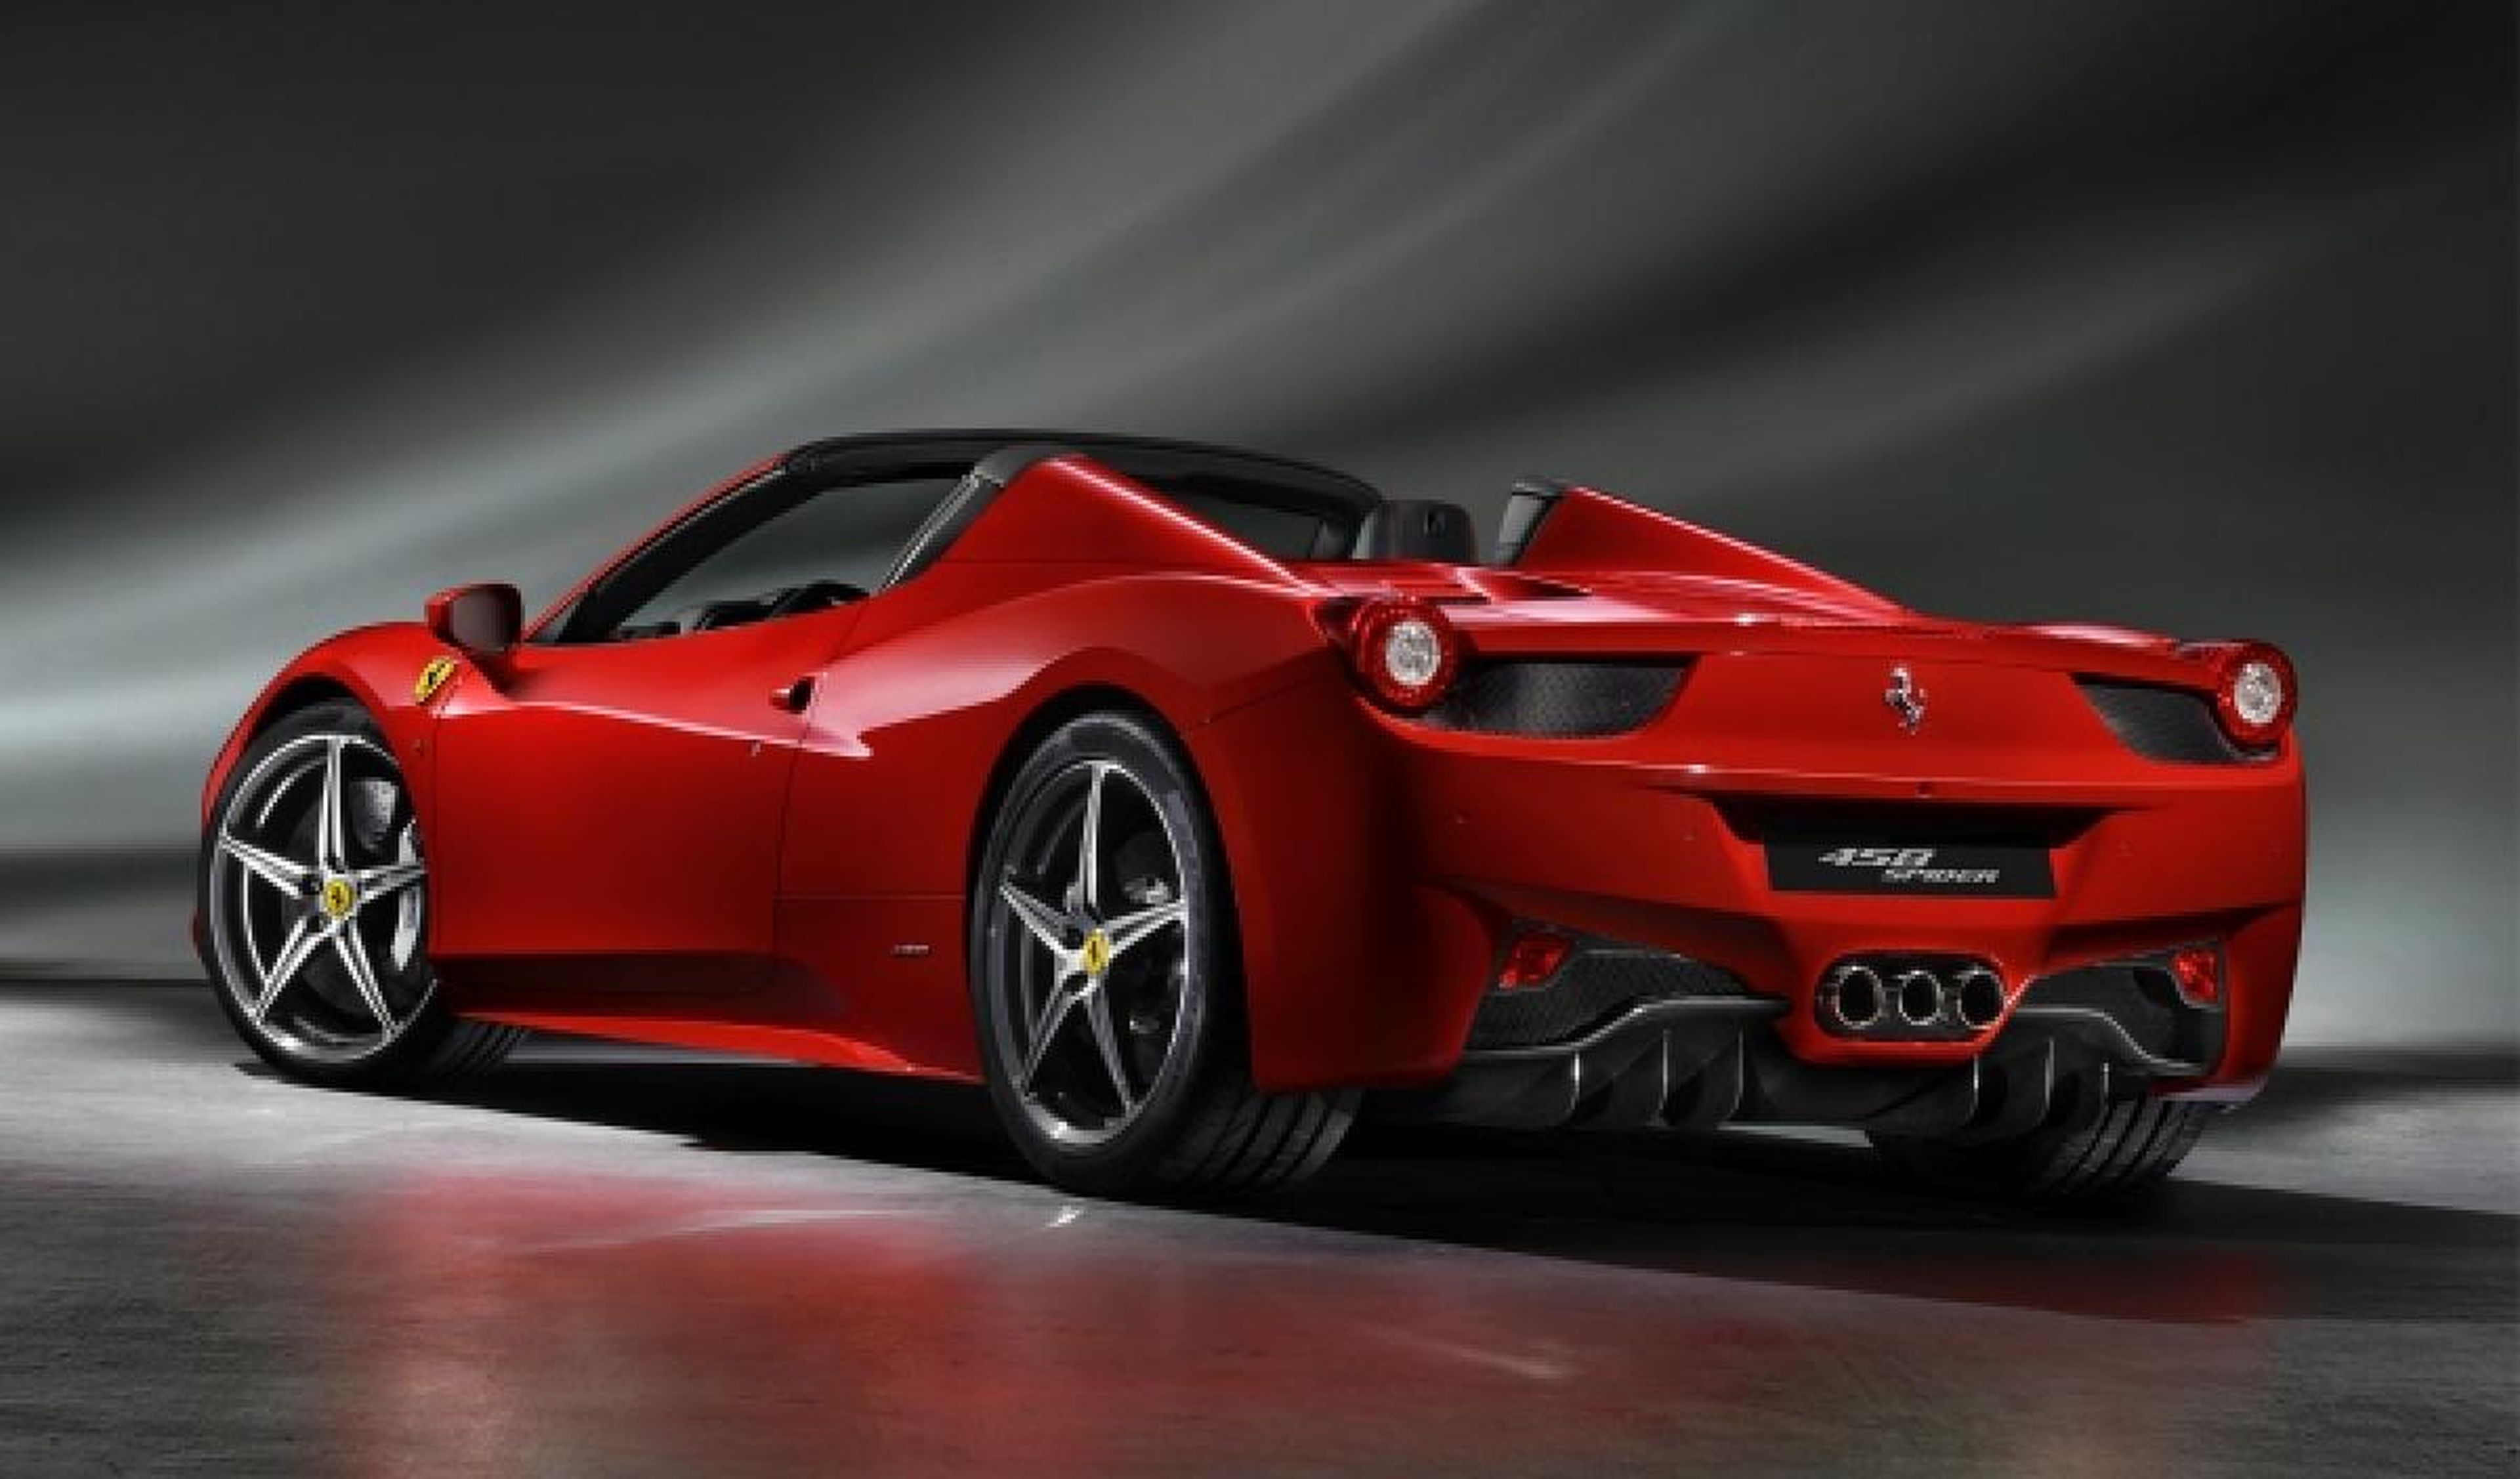 Llamada a revisión de más de 5.000 Ferrari